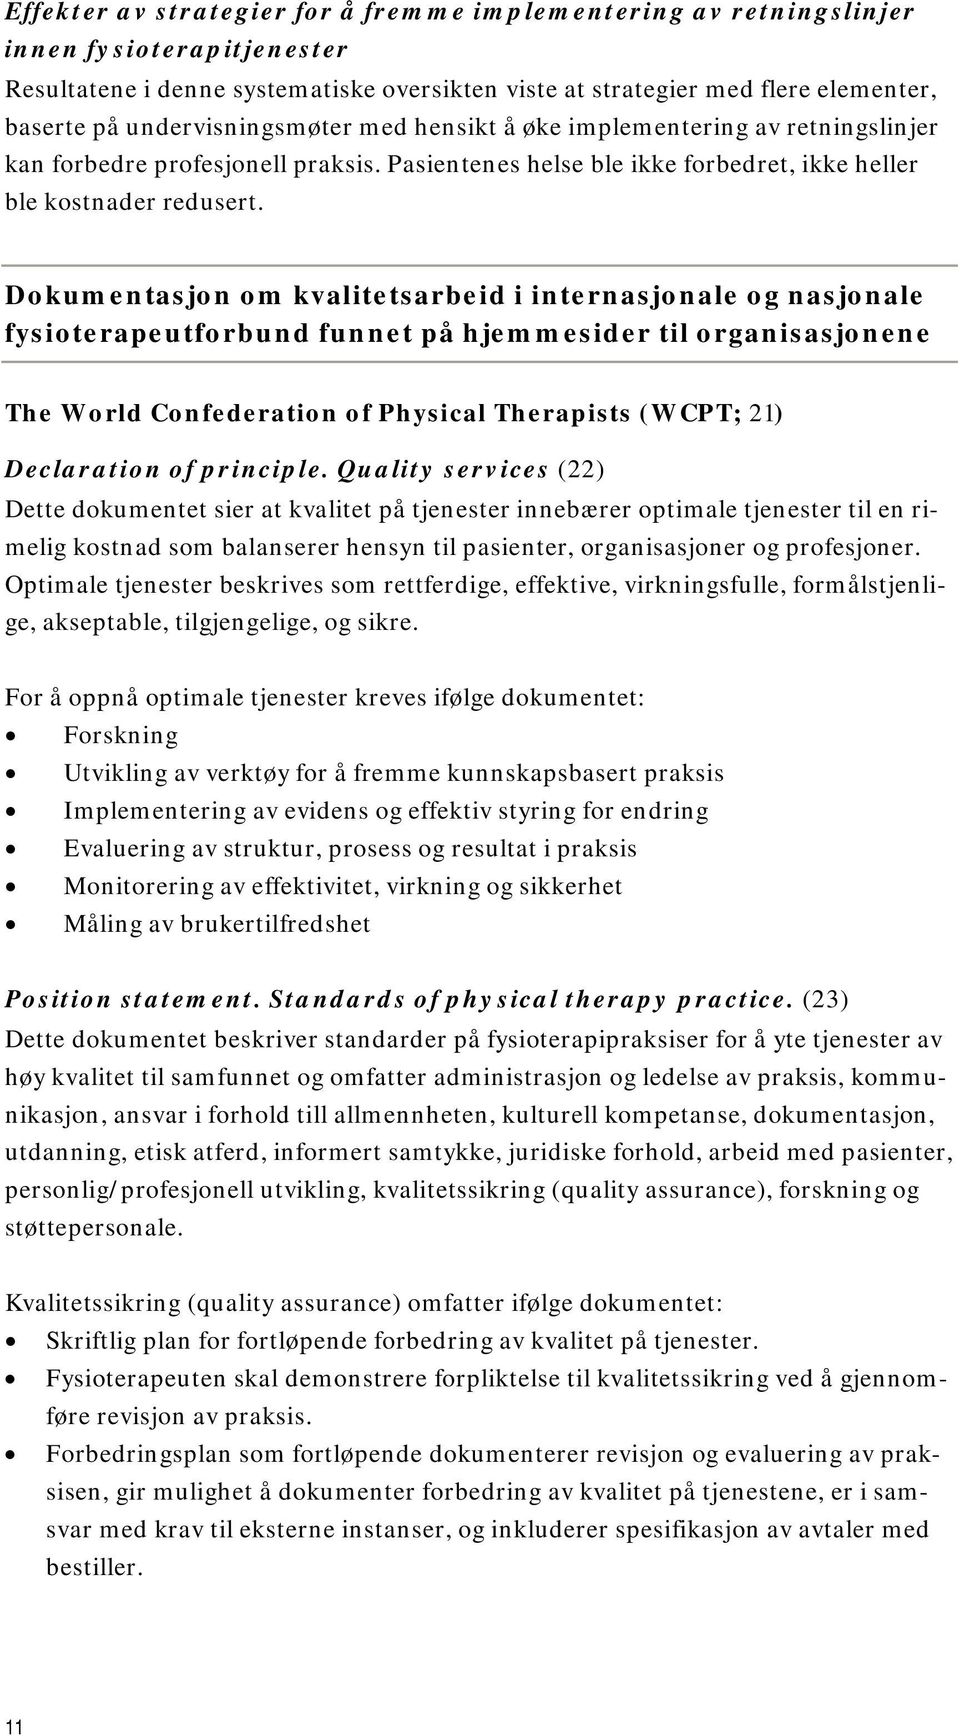 Dokumentasjon om kvalitetsarbeid i internasjonale og nasjonale fysioterapeutforbund funnet på hjemmesider til organisasjonene The World Confederation of Physical Therapists (WCPT; 21) Declaration of